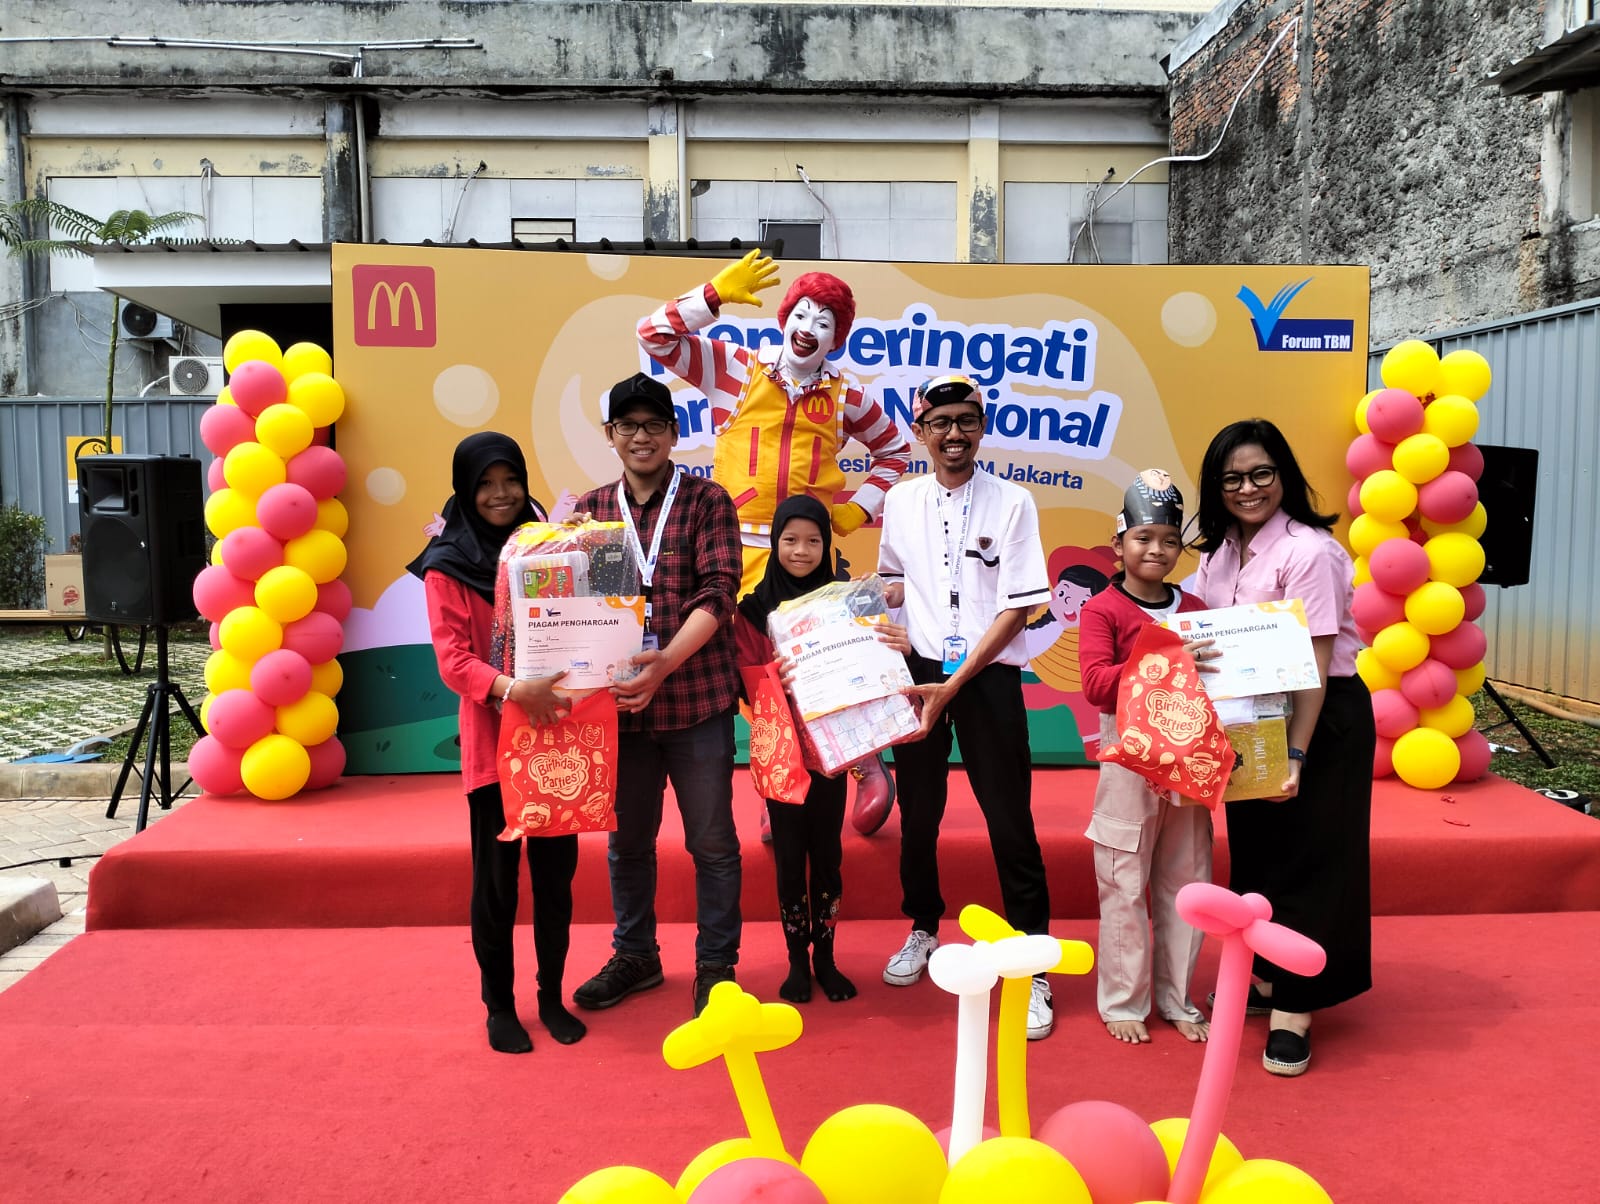 Sambut Hari Anak Nasional, McDonald’s Indonesia Gelar Kelas Menulis Bersama 15 Komunitas Taman Bacaan se-Jakarta